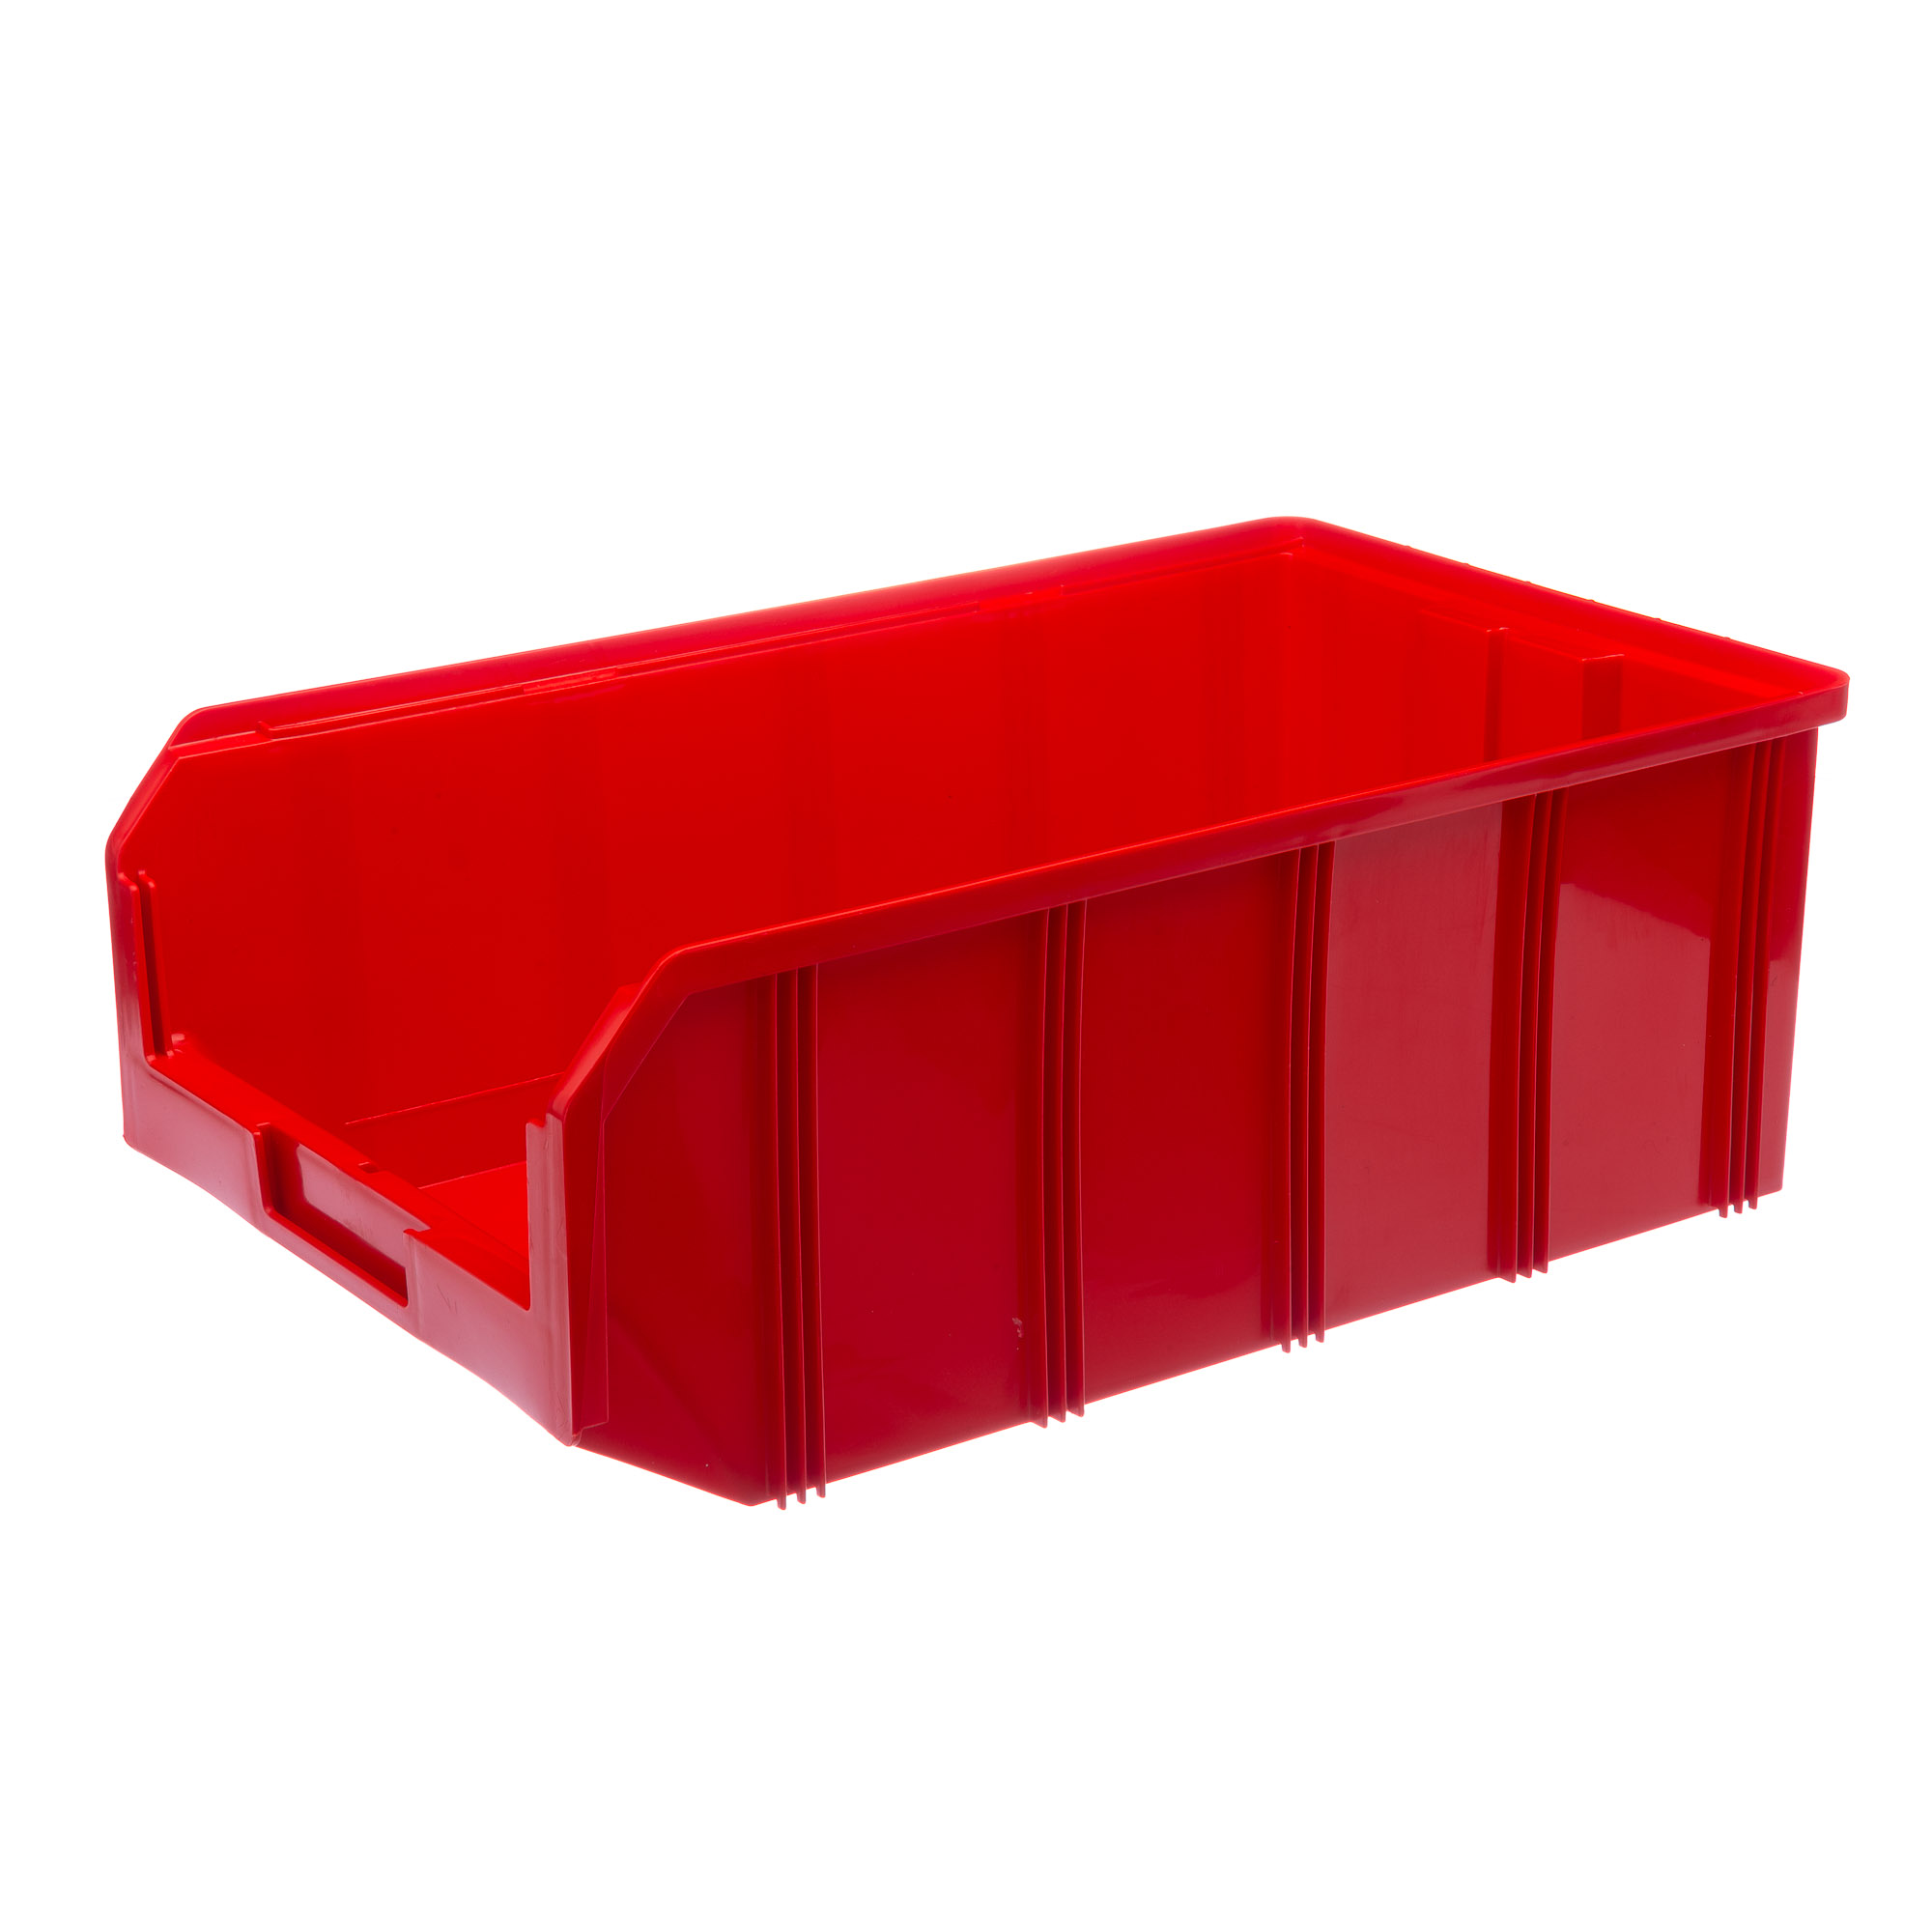 пластиковый контейнер для хранения verde leon neo 26л бирюзовый 38404 Пластиковый ящик Стелла-техник V-4-красный